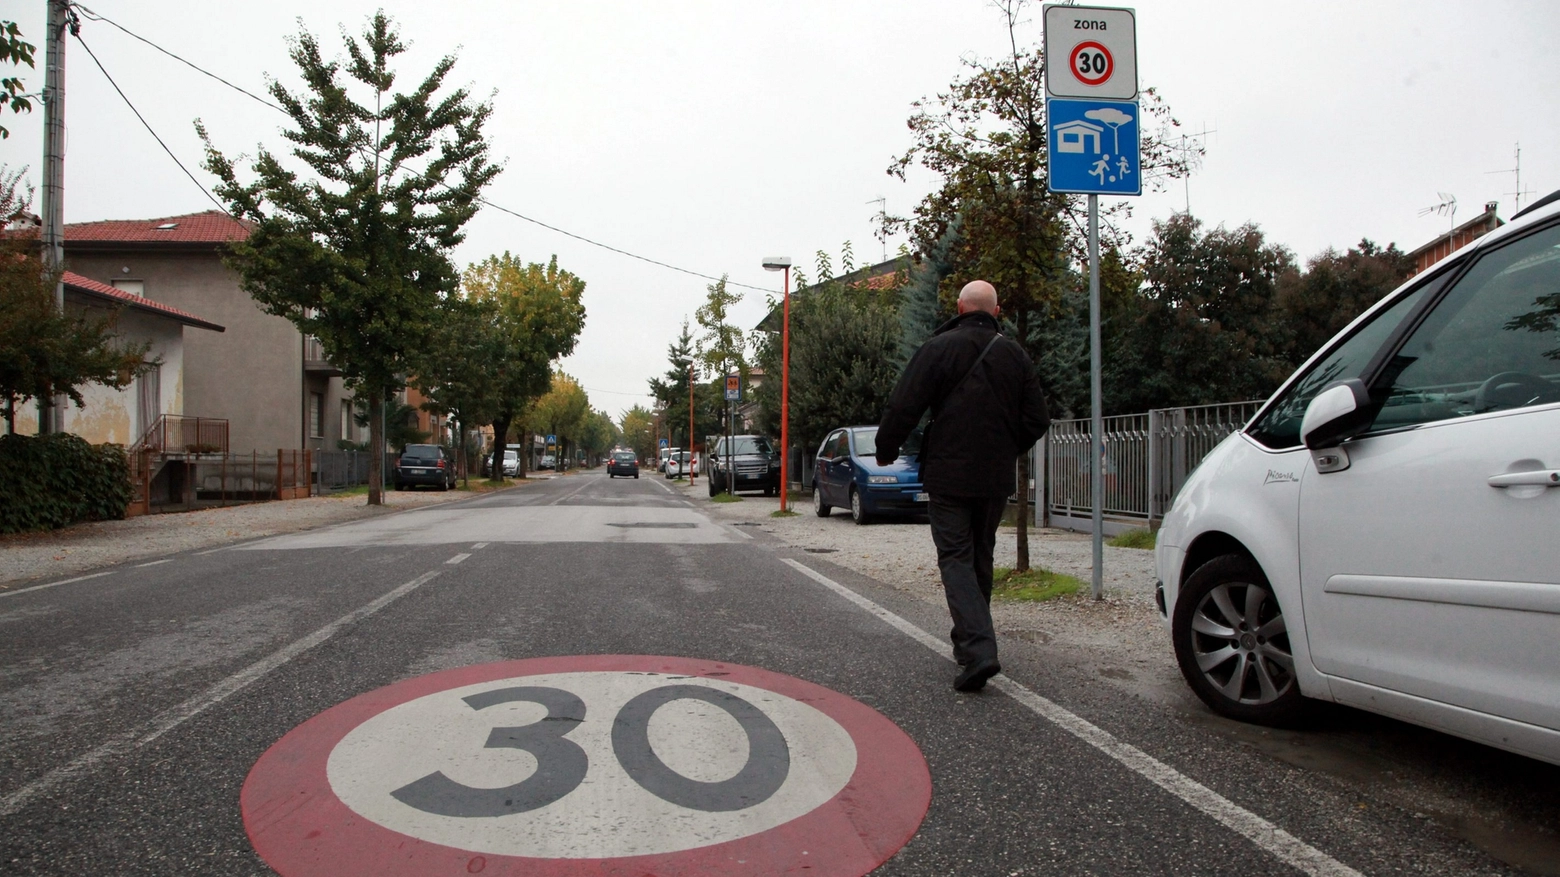 Nasce a Ferrara il comitato a favore di Città 30, progetto atto a limitare le velocità dentro i confini urbani